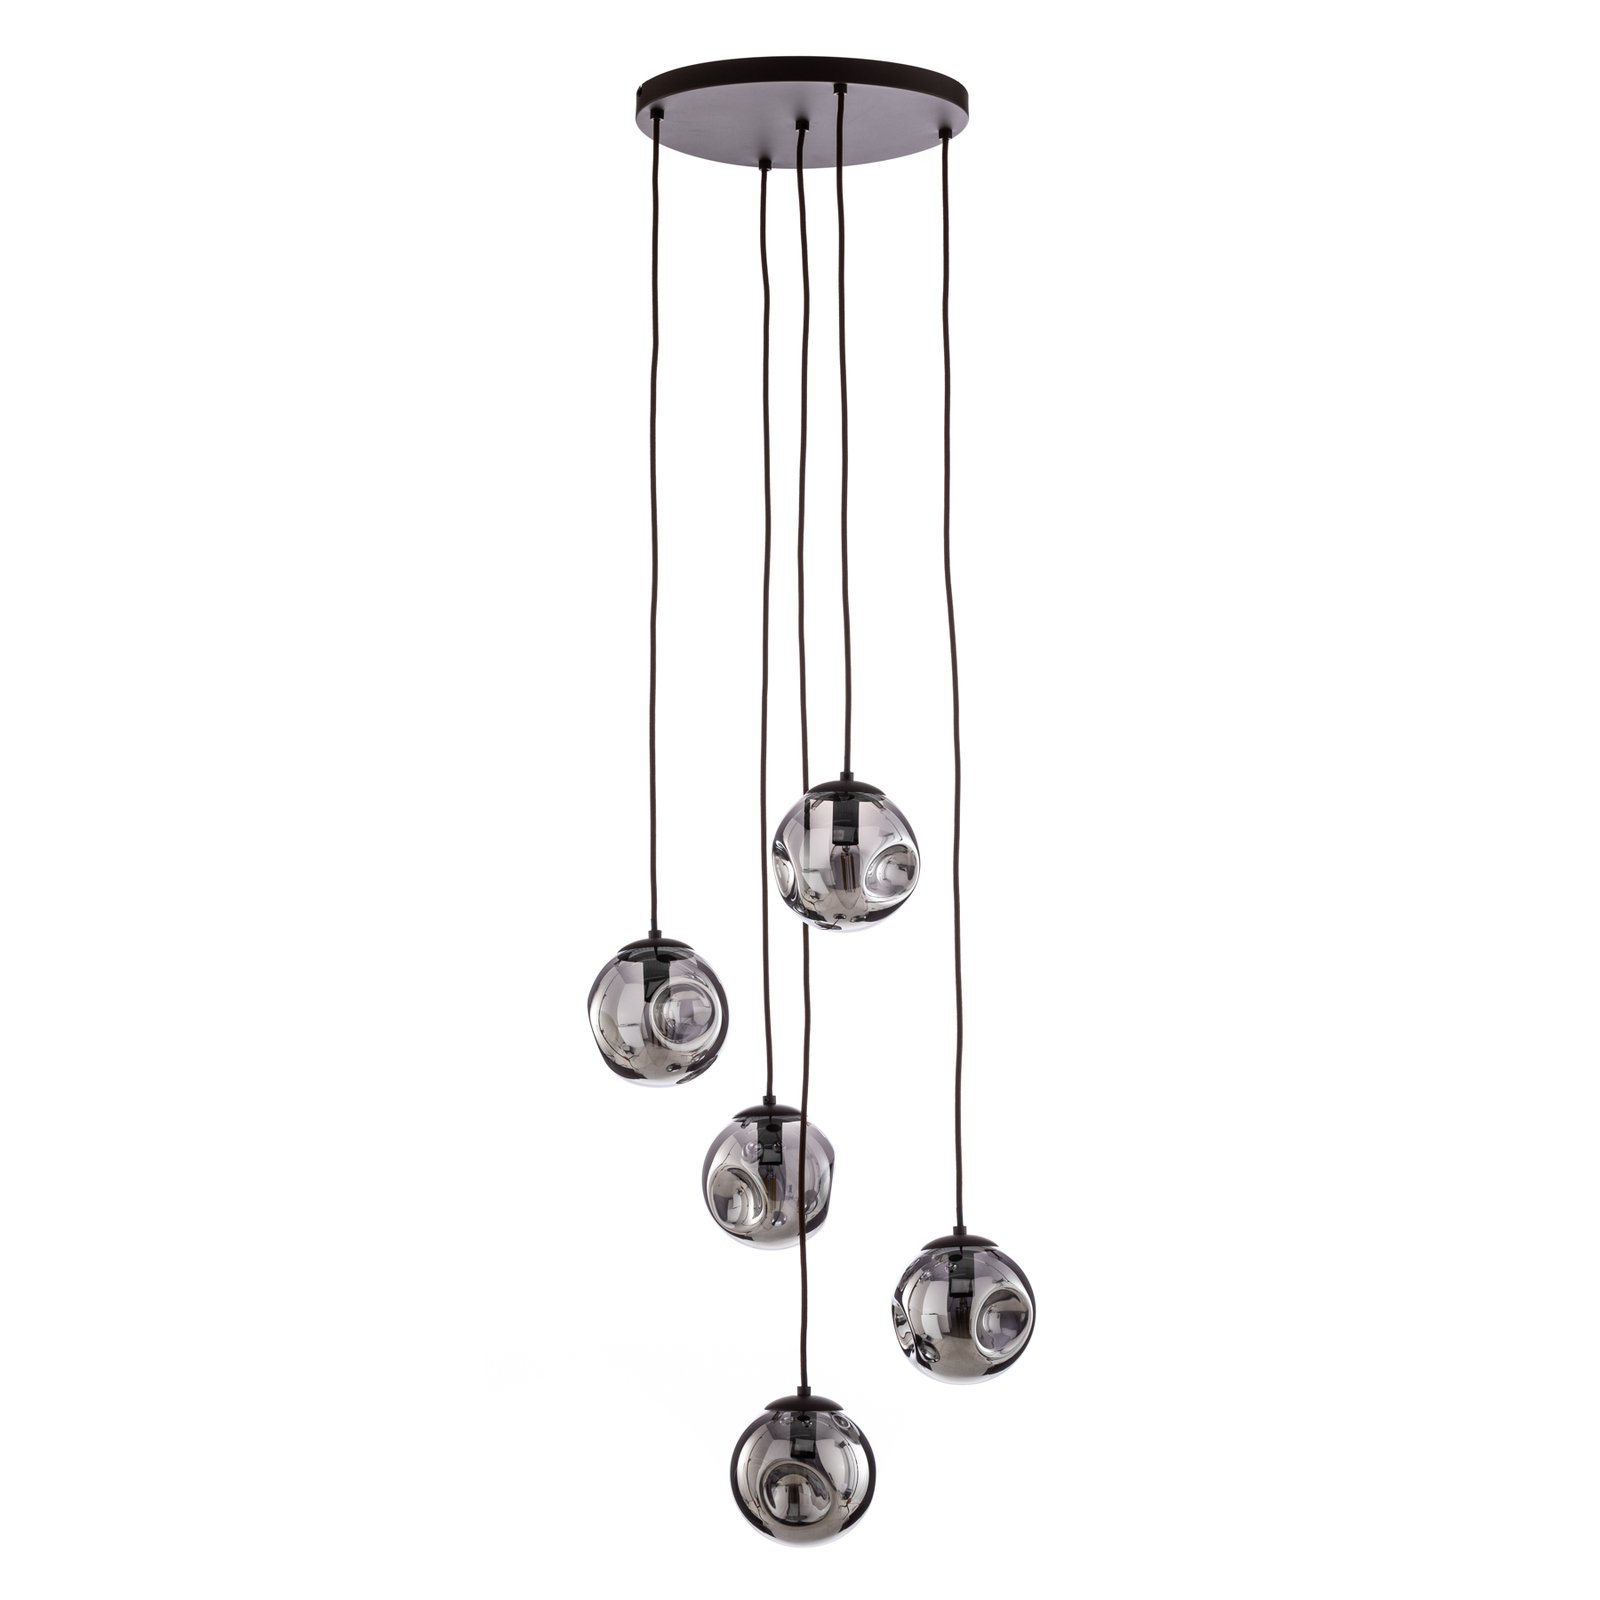 Lindby Valentina pendant light, glass, smoky grey, round, 5-bulb.